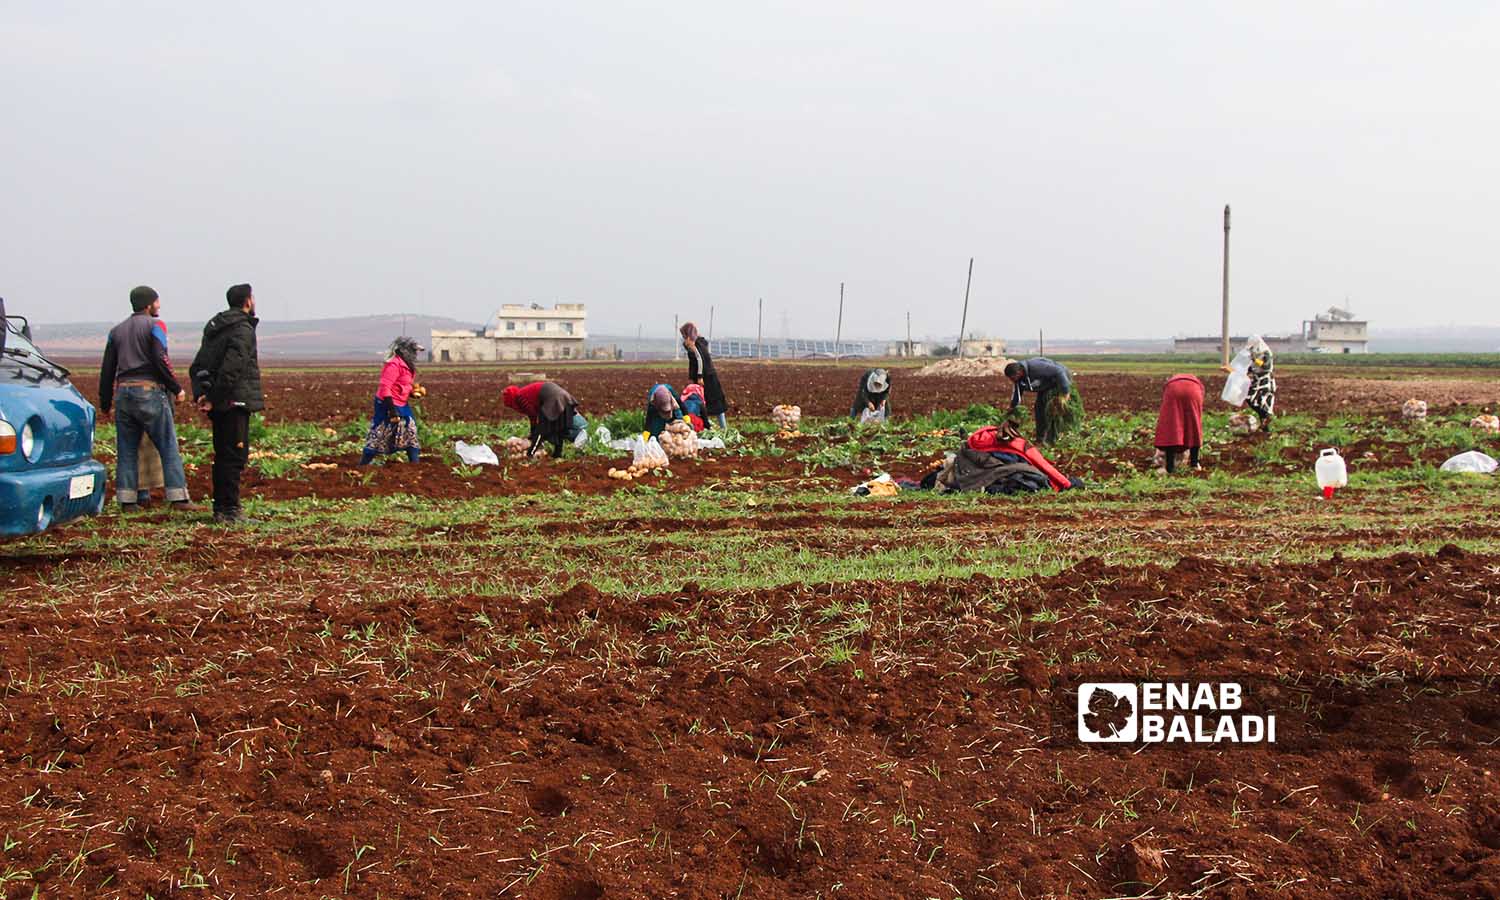 عمال يقلعون البطاطا في بلدة زردنا بريف ادلب - 26 من كانون الأول 2022 (عنب بلدي/ إياد عبد الجواد)
